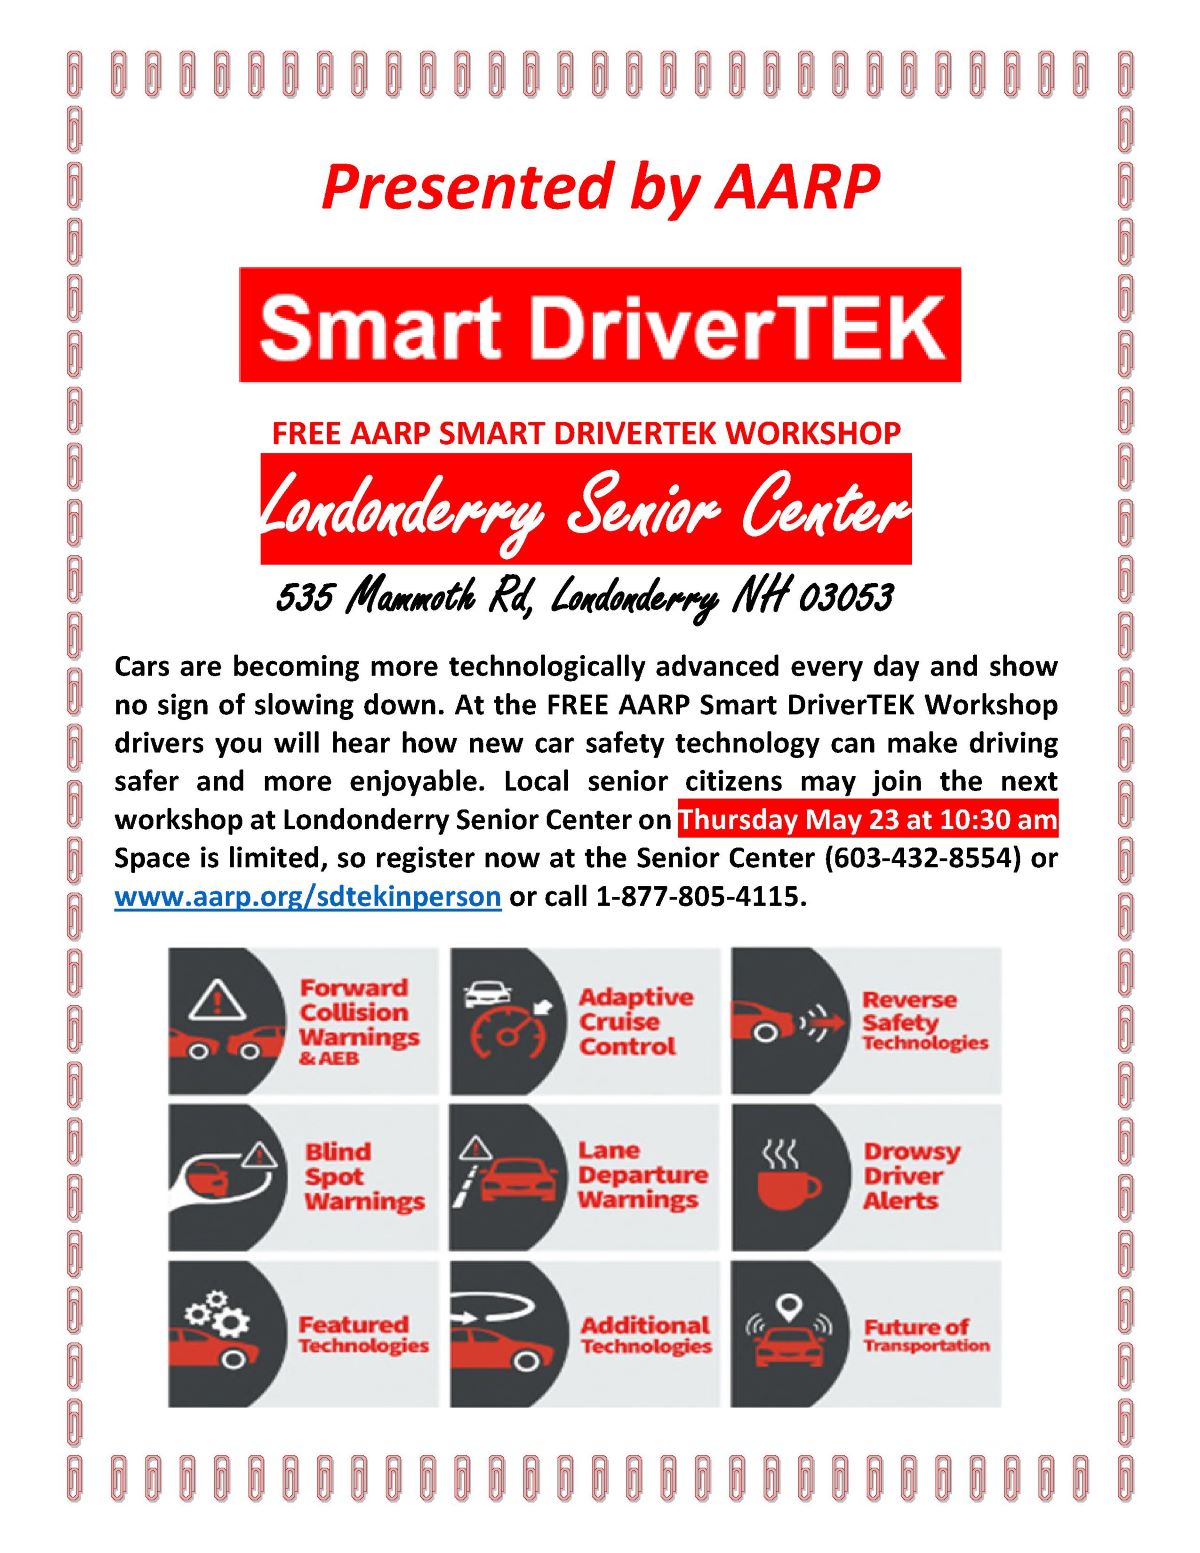 AARP Smart DriverTEK presentation flyer